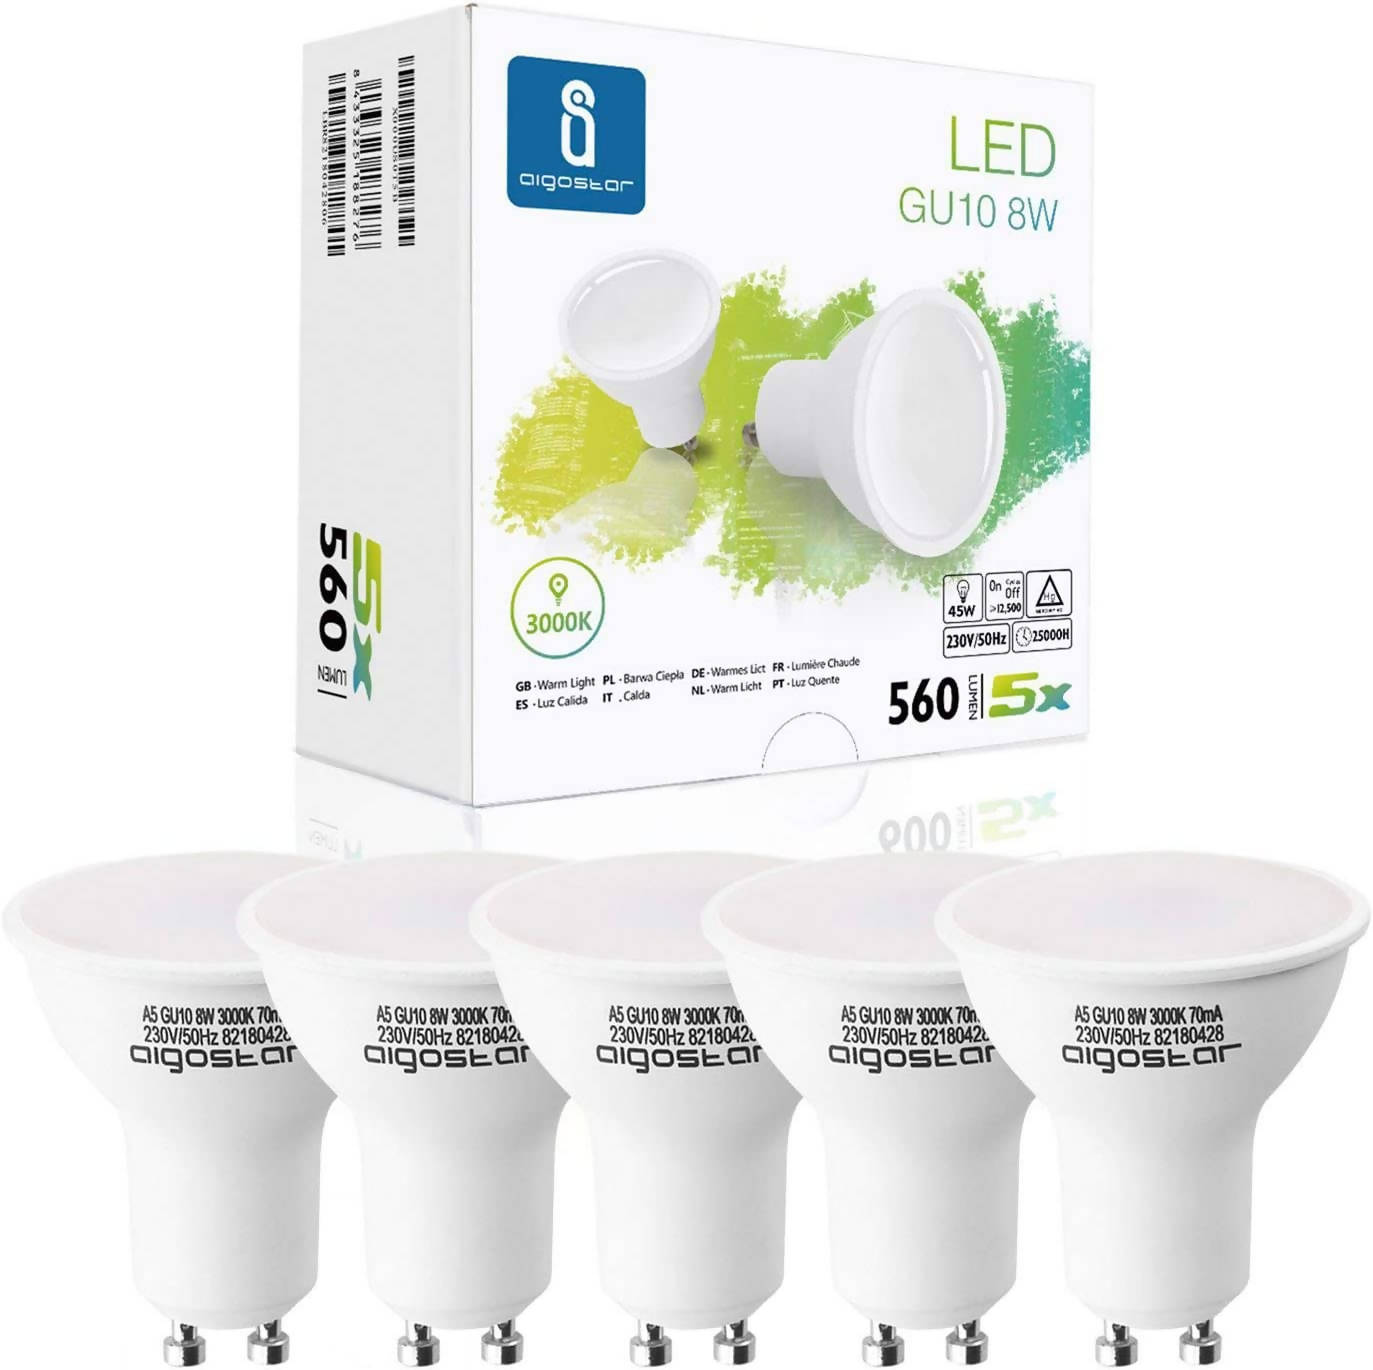 GU10 LED Warmweiß Licht 8W Leuchtmittel, Glühlampe 560lm 3000K 230V Abstrahlwinkel 120-160 Grad, Birne Klar Flimmerfrei nicht Dimmbar, 5er-Pack